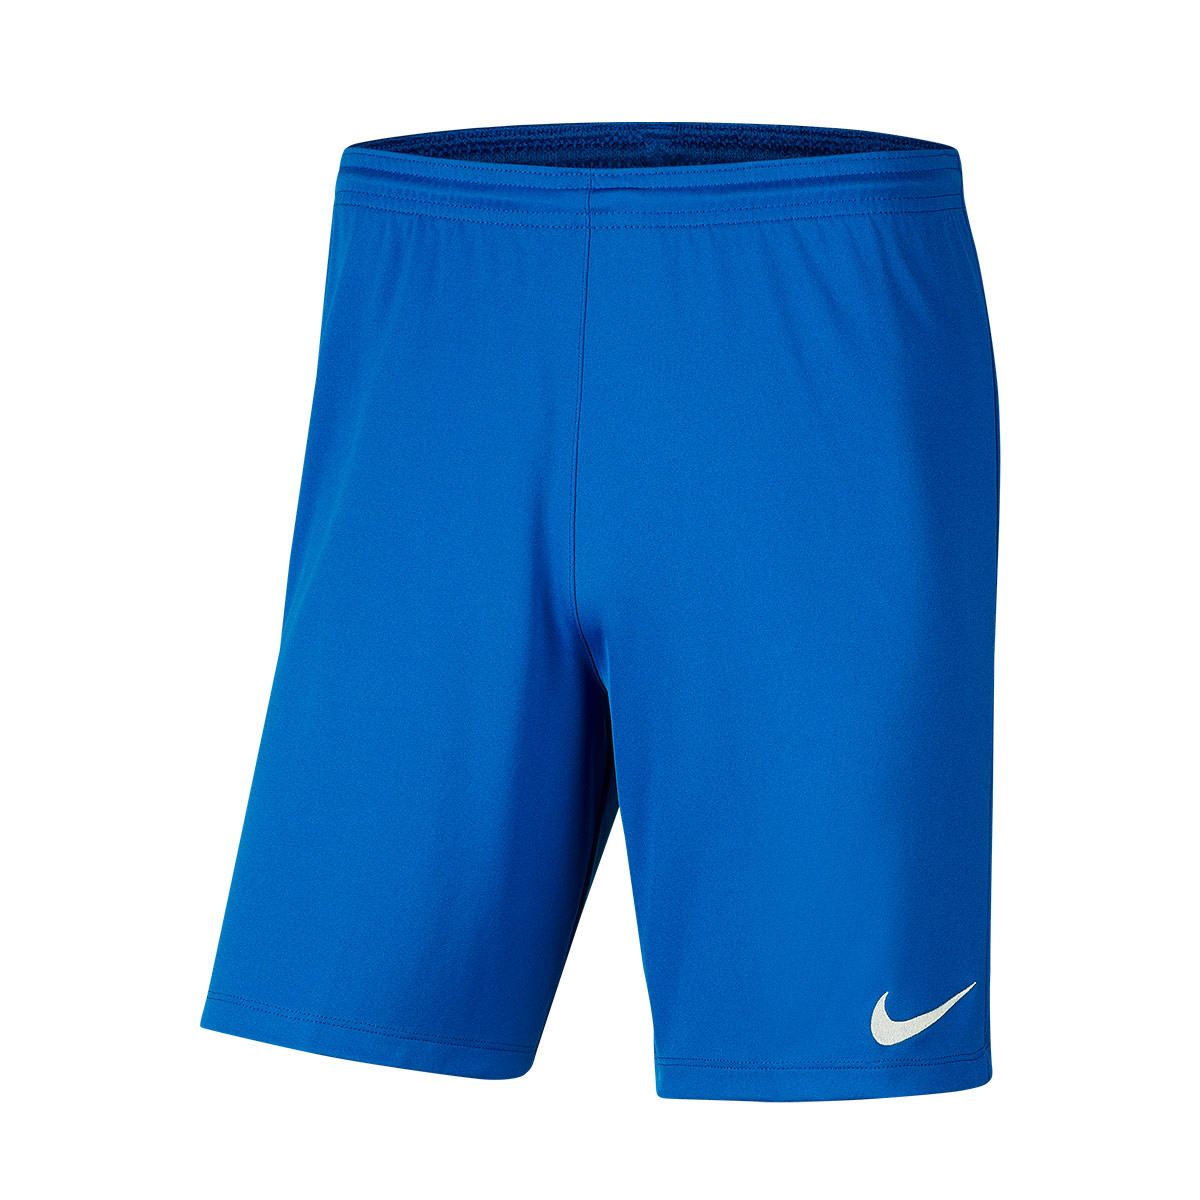 nike royal blue shorts